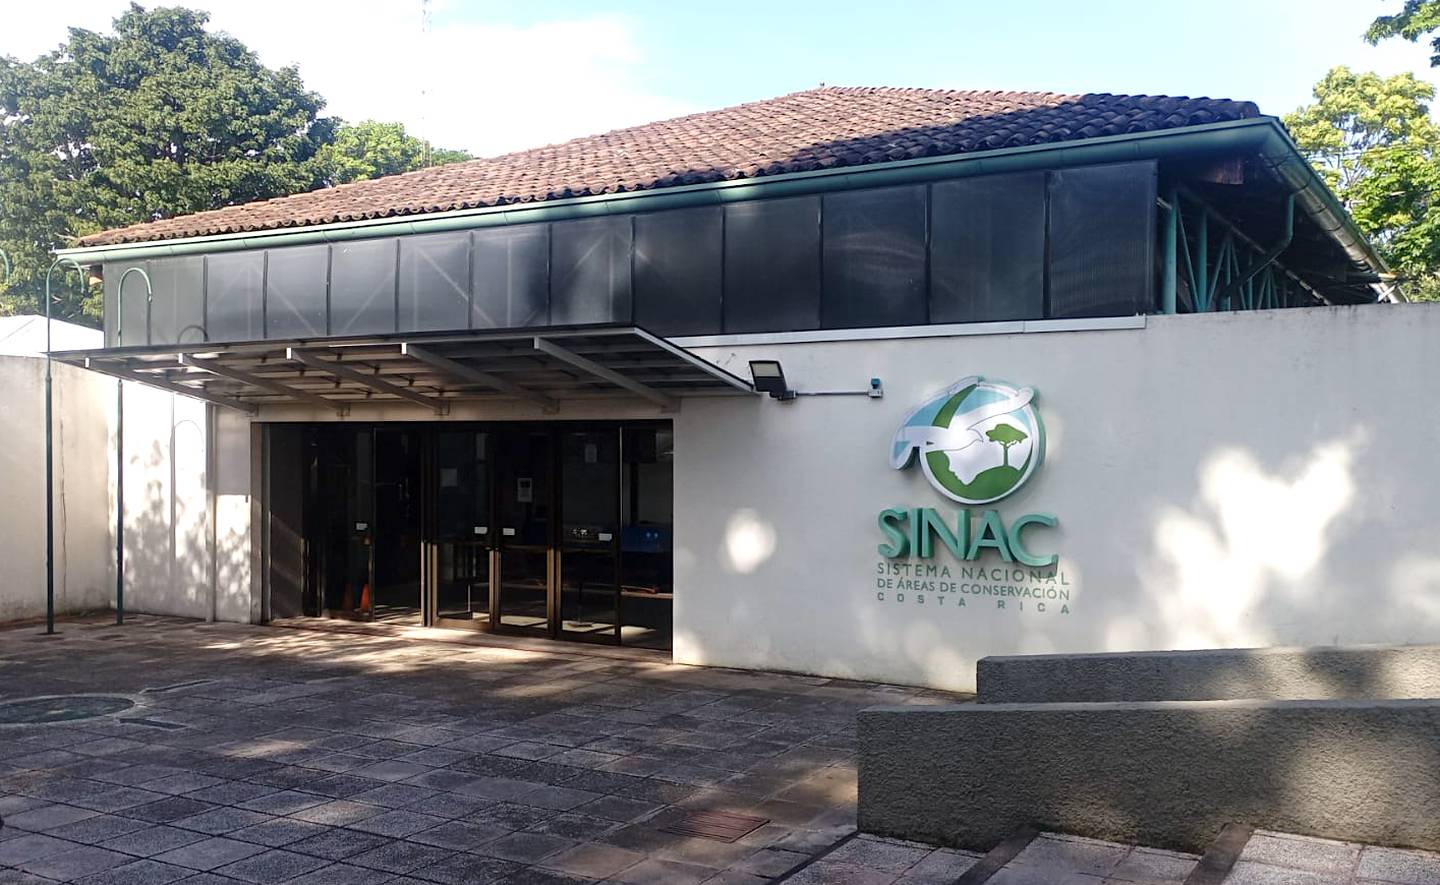 Entrada principal a las oficinas central del Sinac en Santo Domingo de Heredia la mañana de este martes 16 de julio. Fotografía: La Nación.